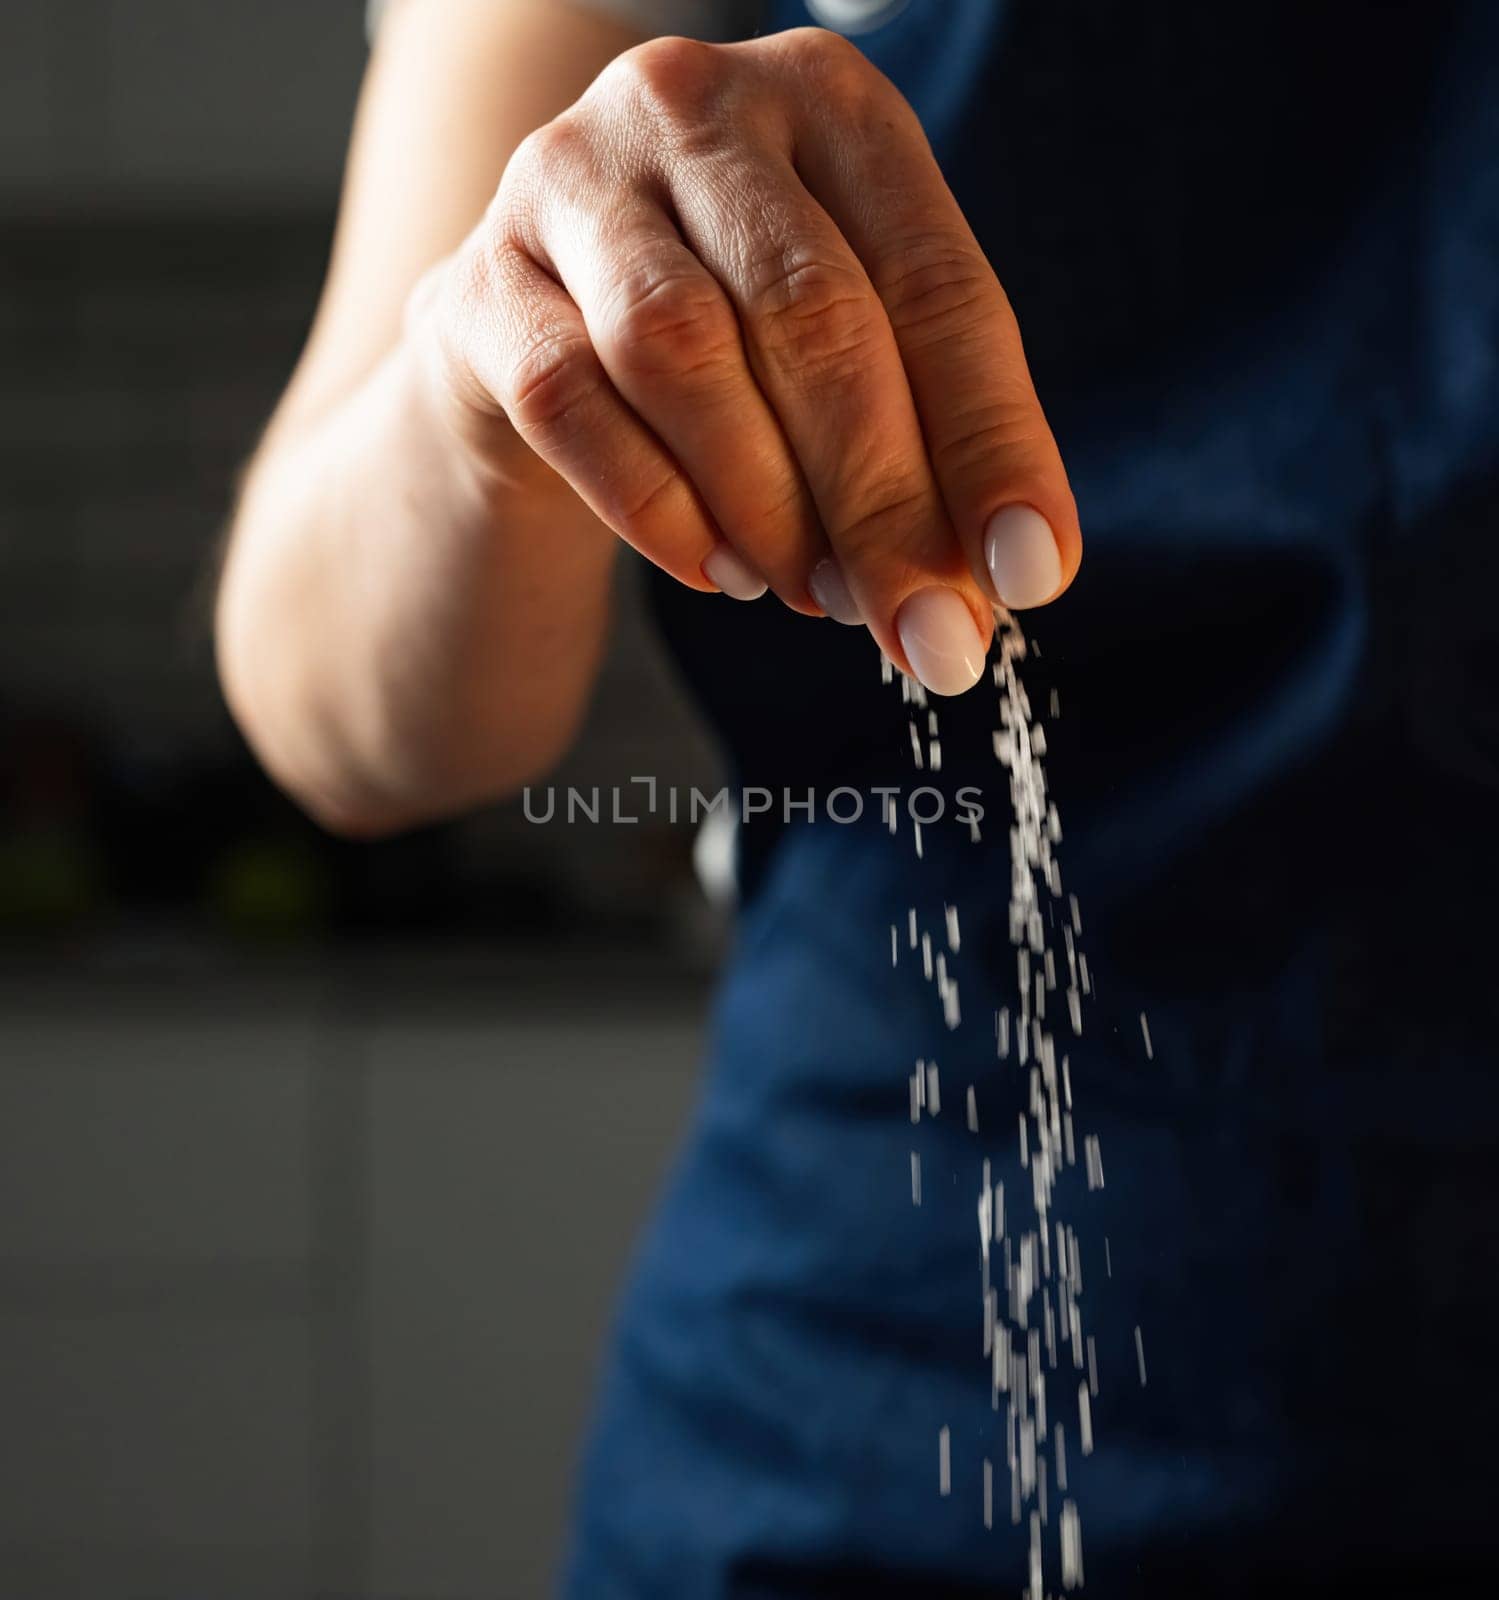 Woman Salts Food With A Pinch Of Salt by GekaSkr